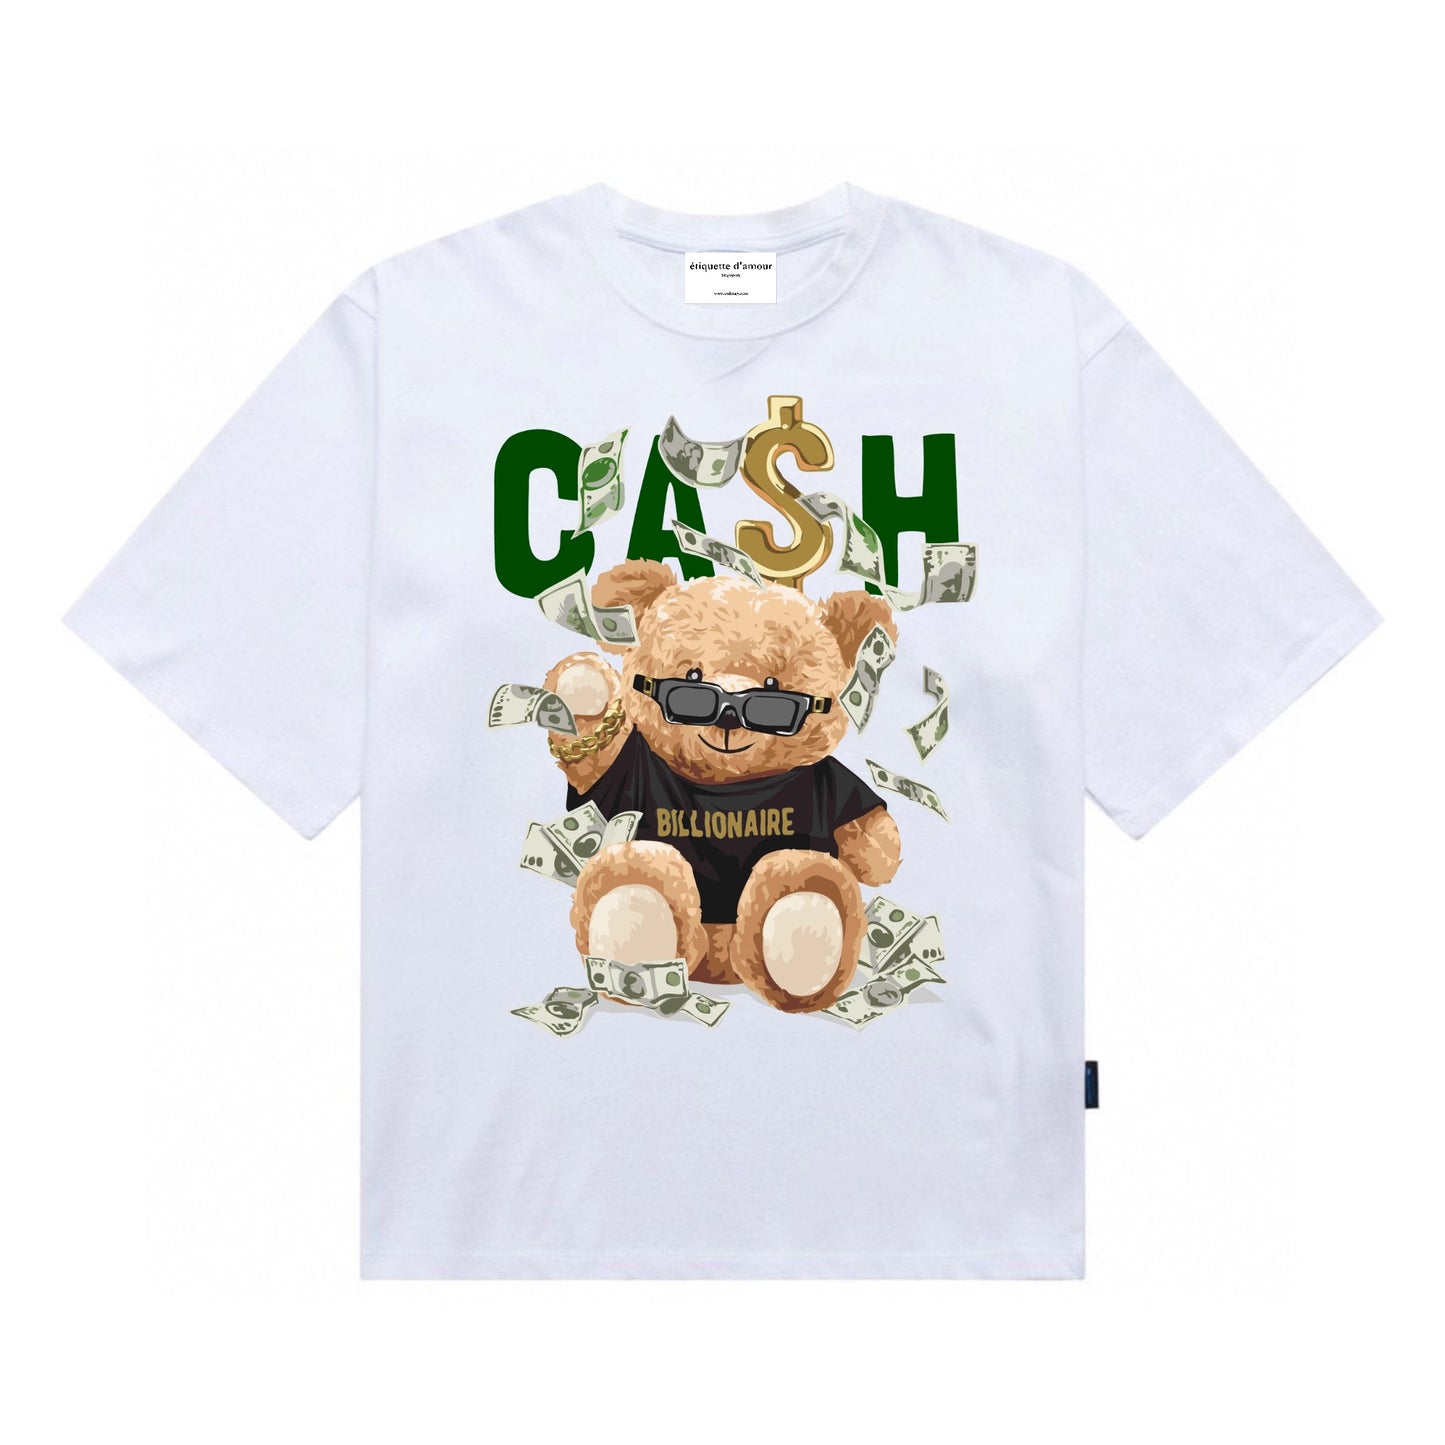 Etiquette Unisex Oversized T-Shirt - 0034 Billionaire Cash Bear